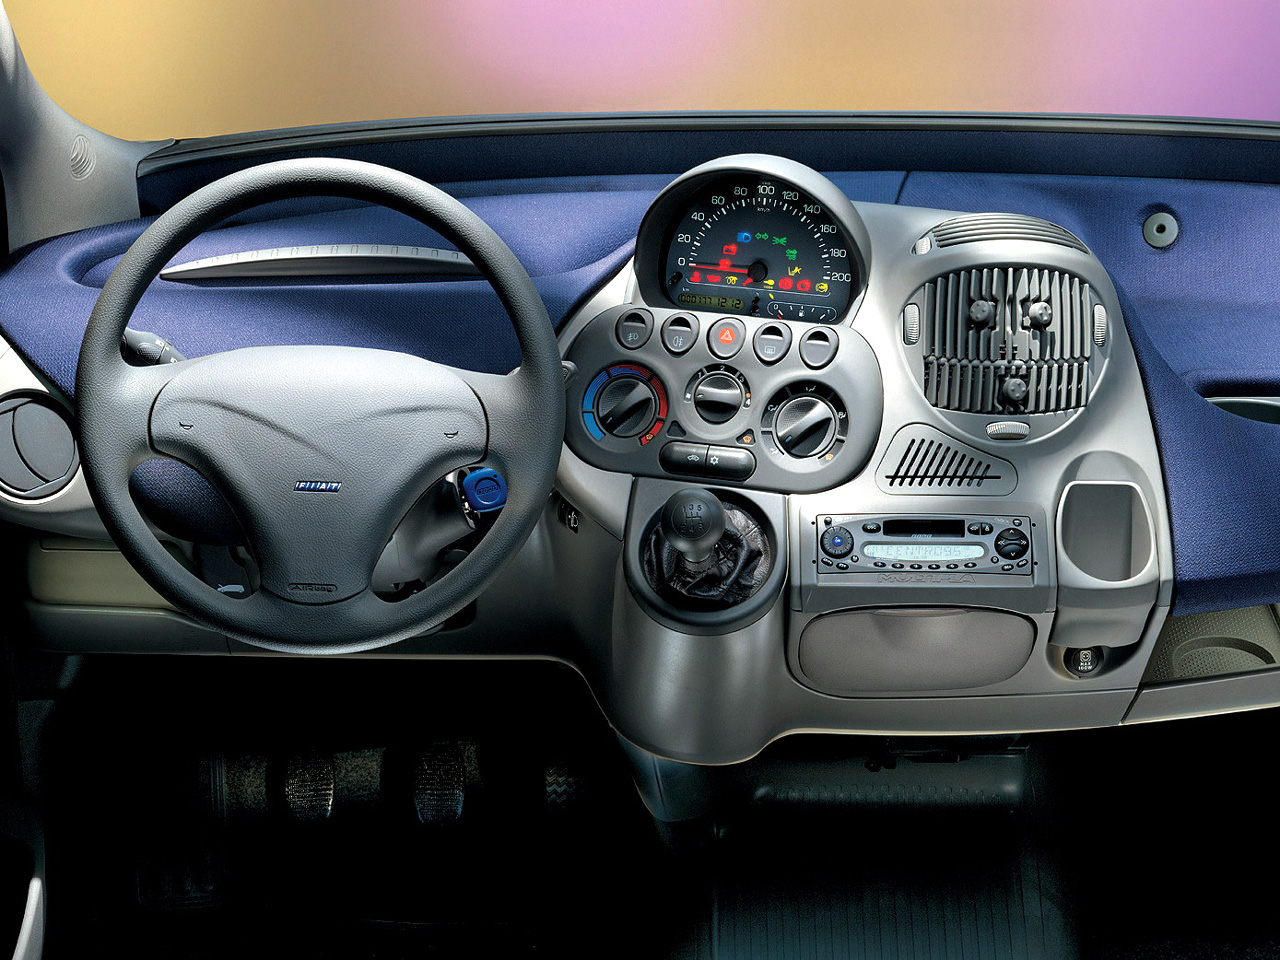 Fiat Multipla, 1999-2001 - Interior